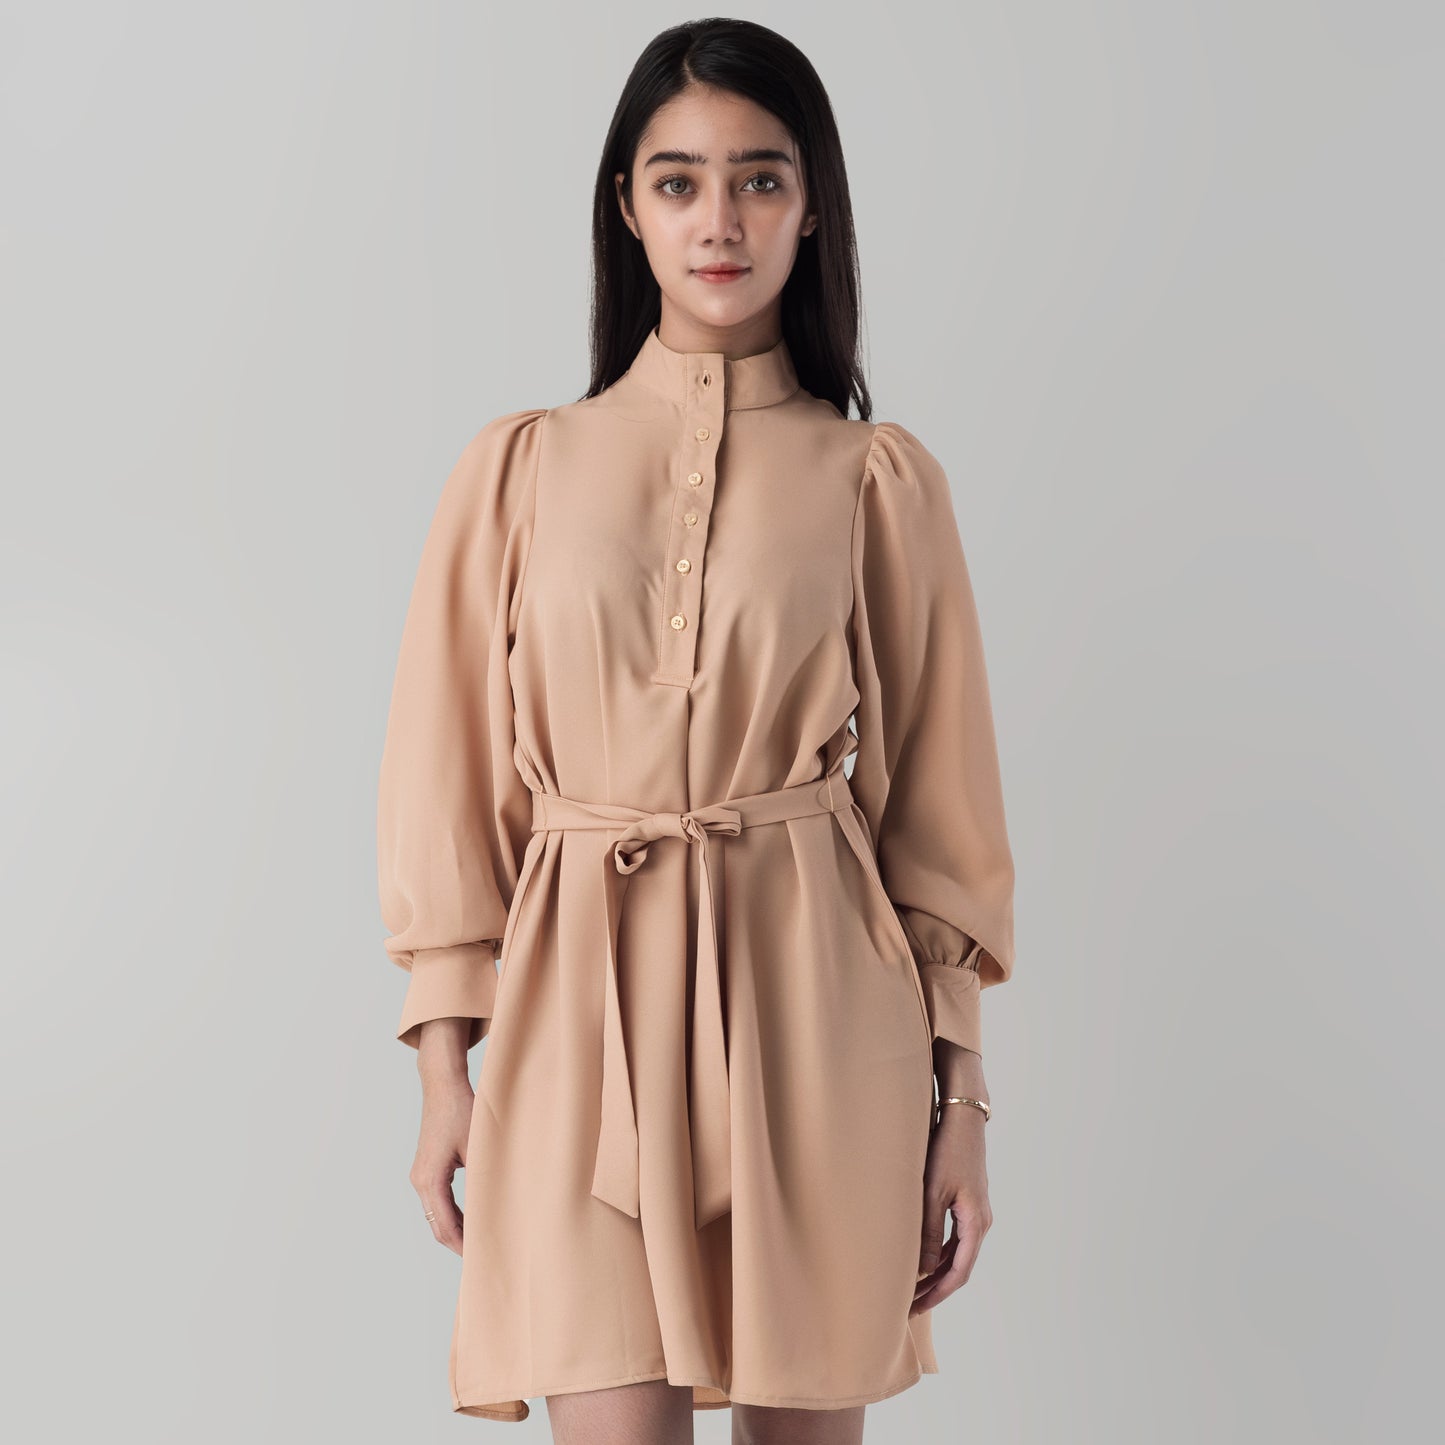 Benhill "Mira" Dress Tunik Wanita Mocca 824-39I77